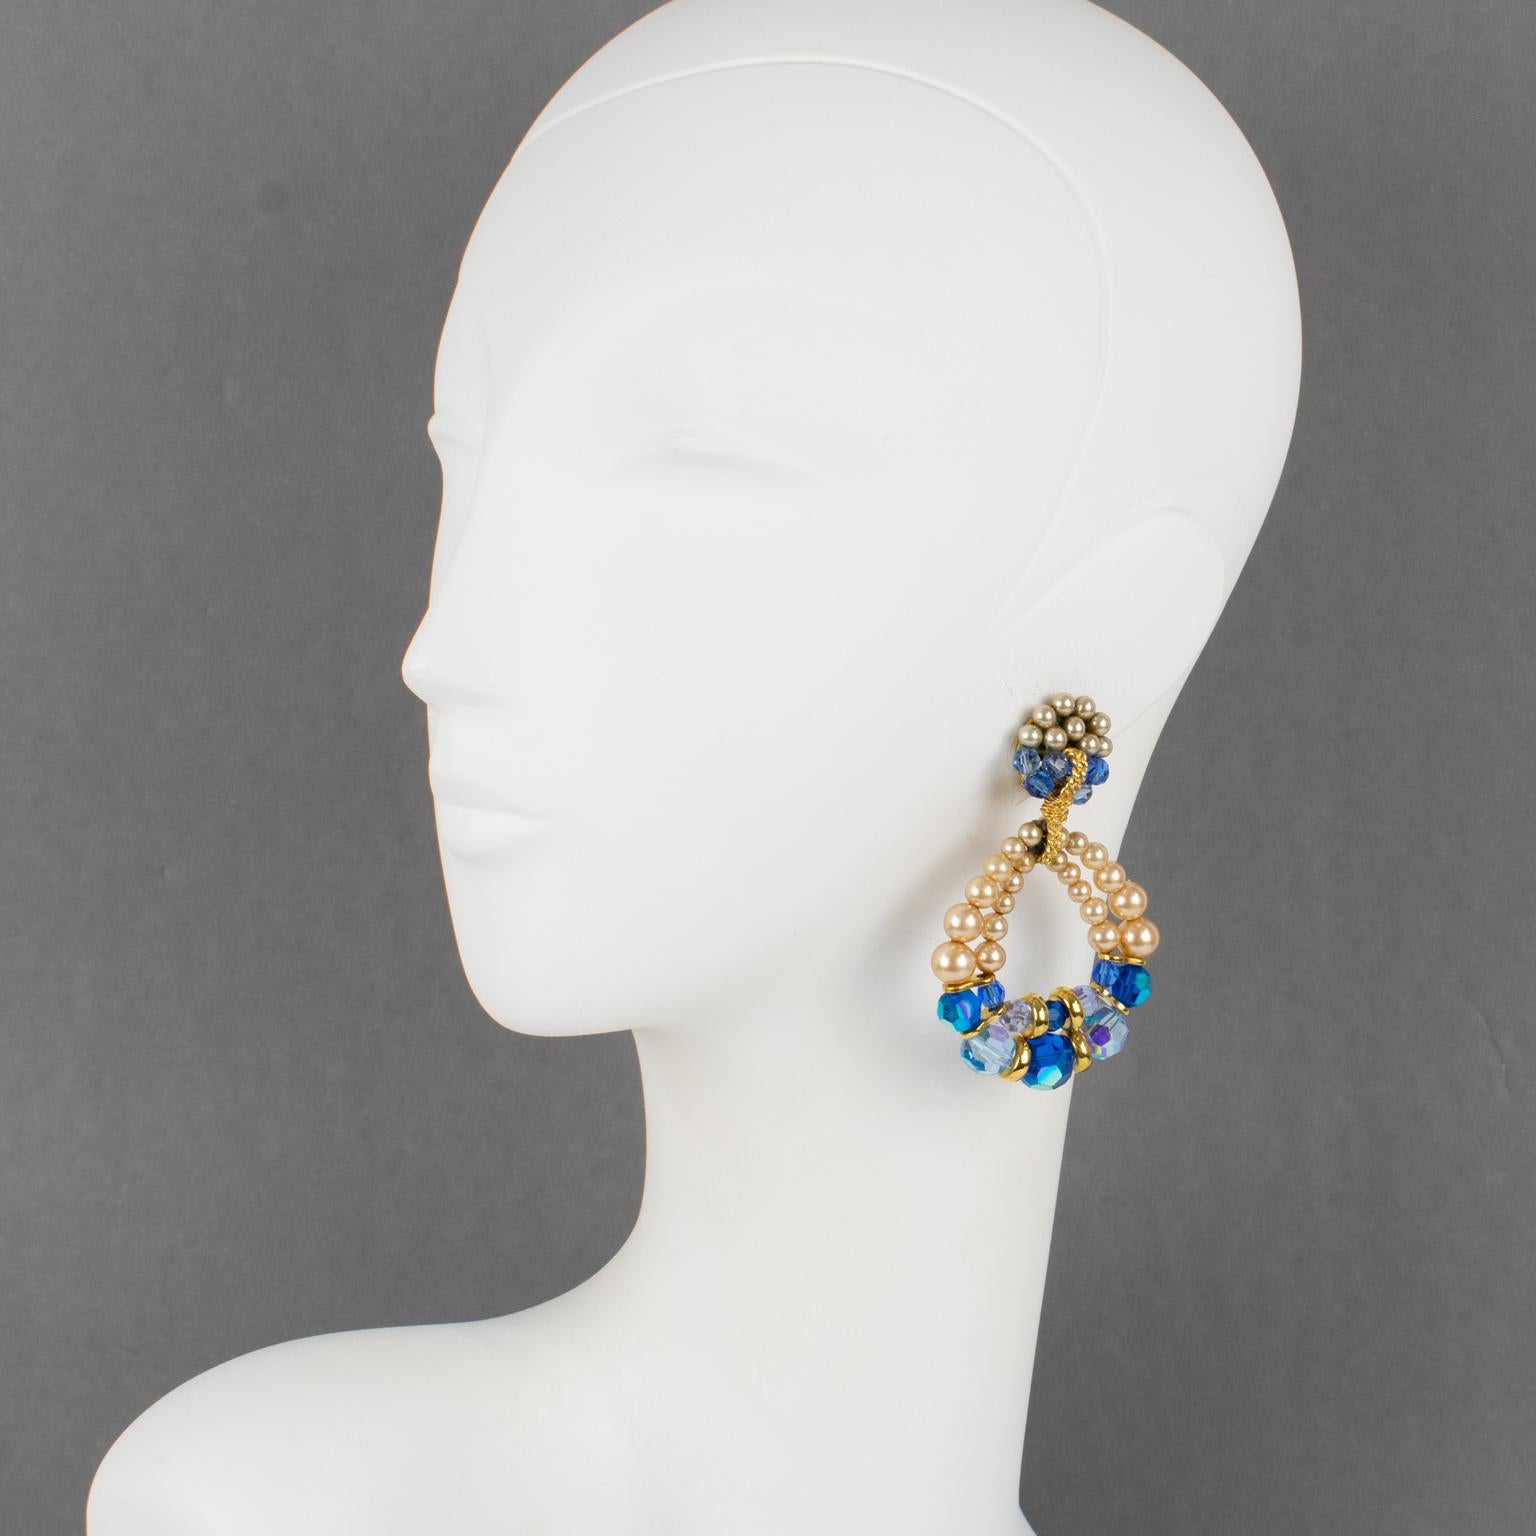 Francoise Montague Paris hat diese exquisiten baumelnden Ohrringe entworfen. Die kultige Lolita-Form hat ein handgefertigtes Doppelring-Design, das mit kobaltblauen und babyblauen facettierten Kristallperlen und Perlenimitaten verziert ist. Die